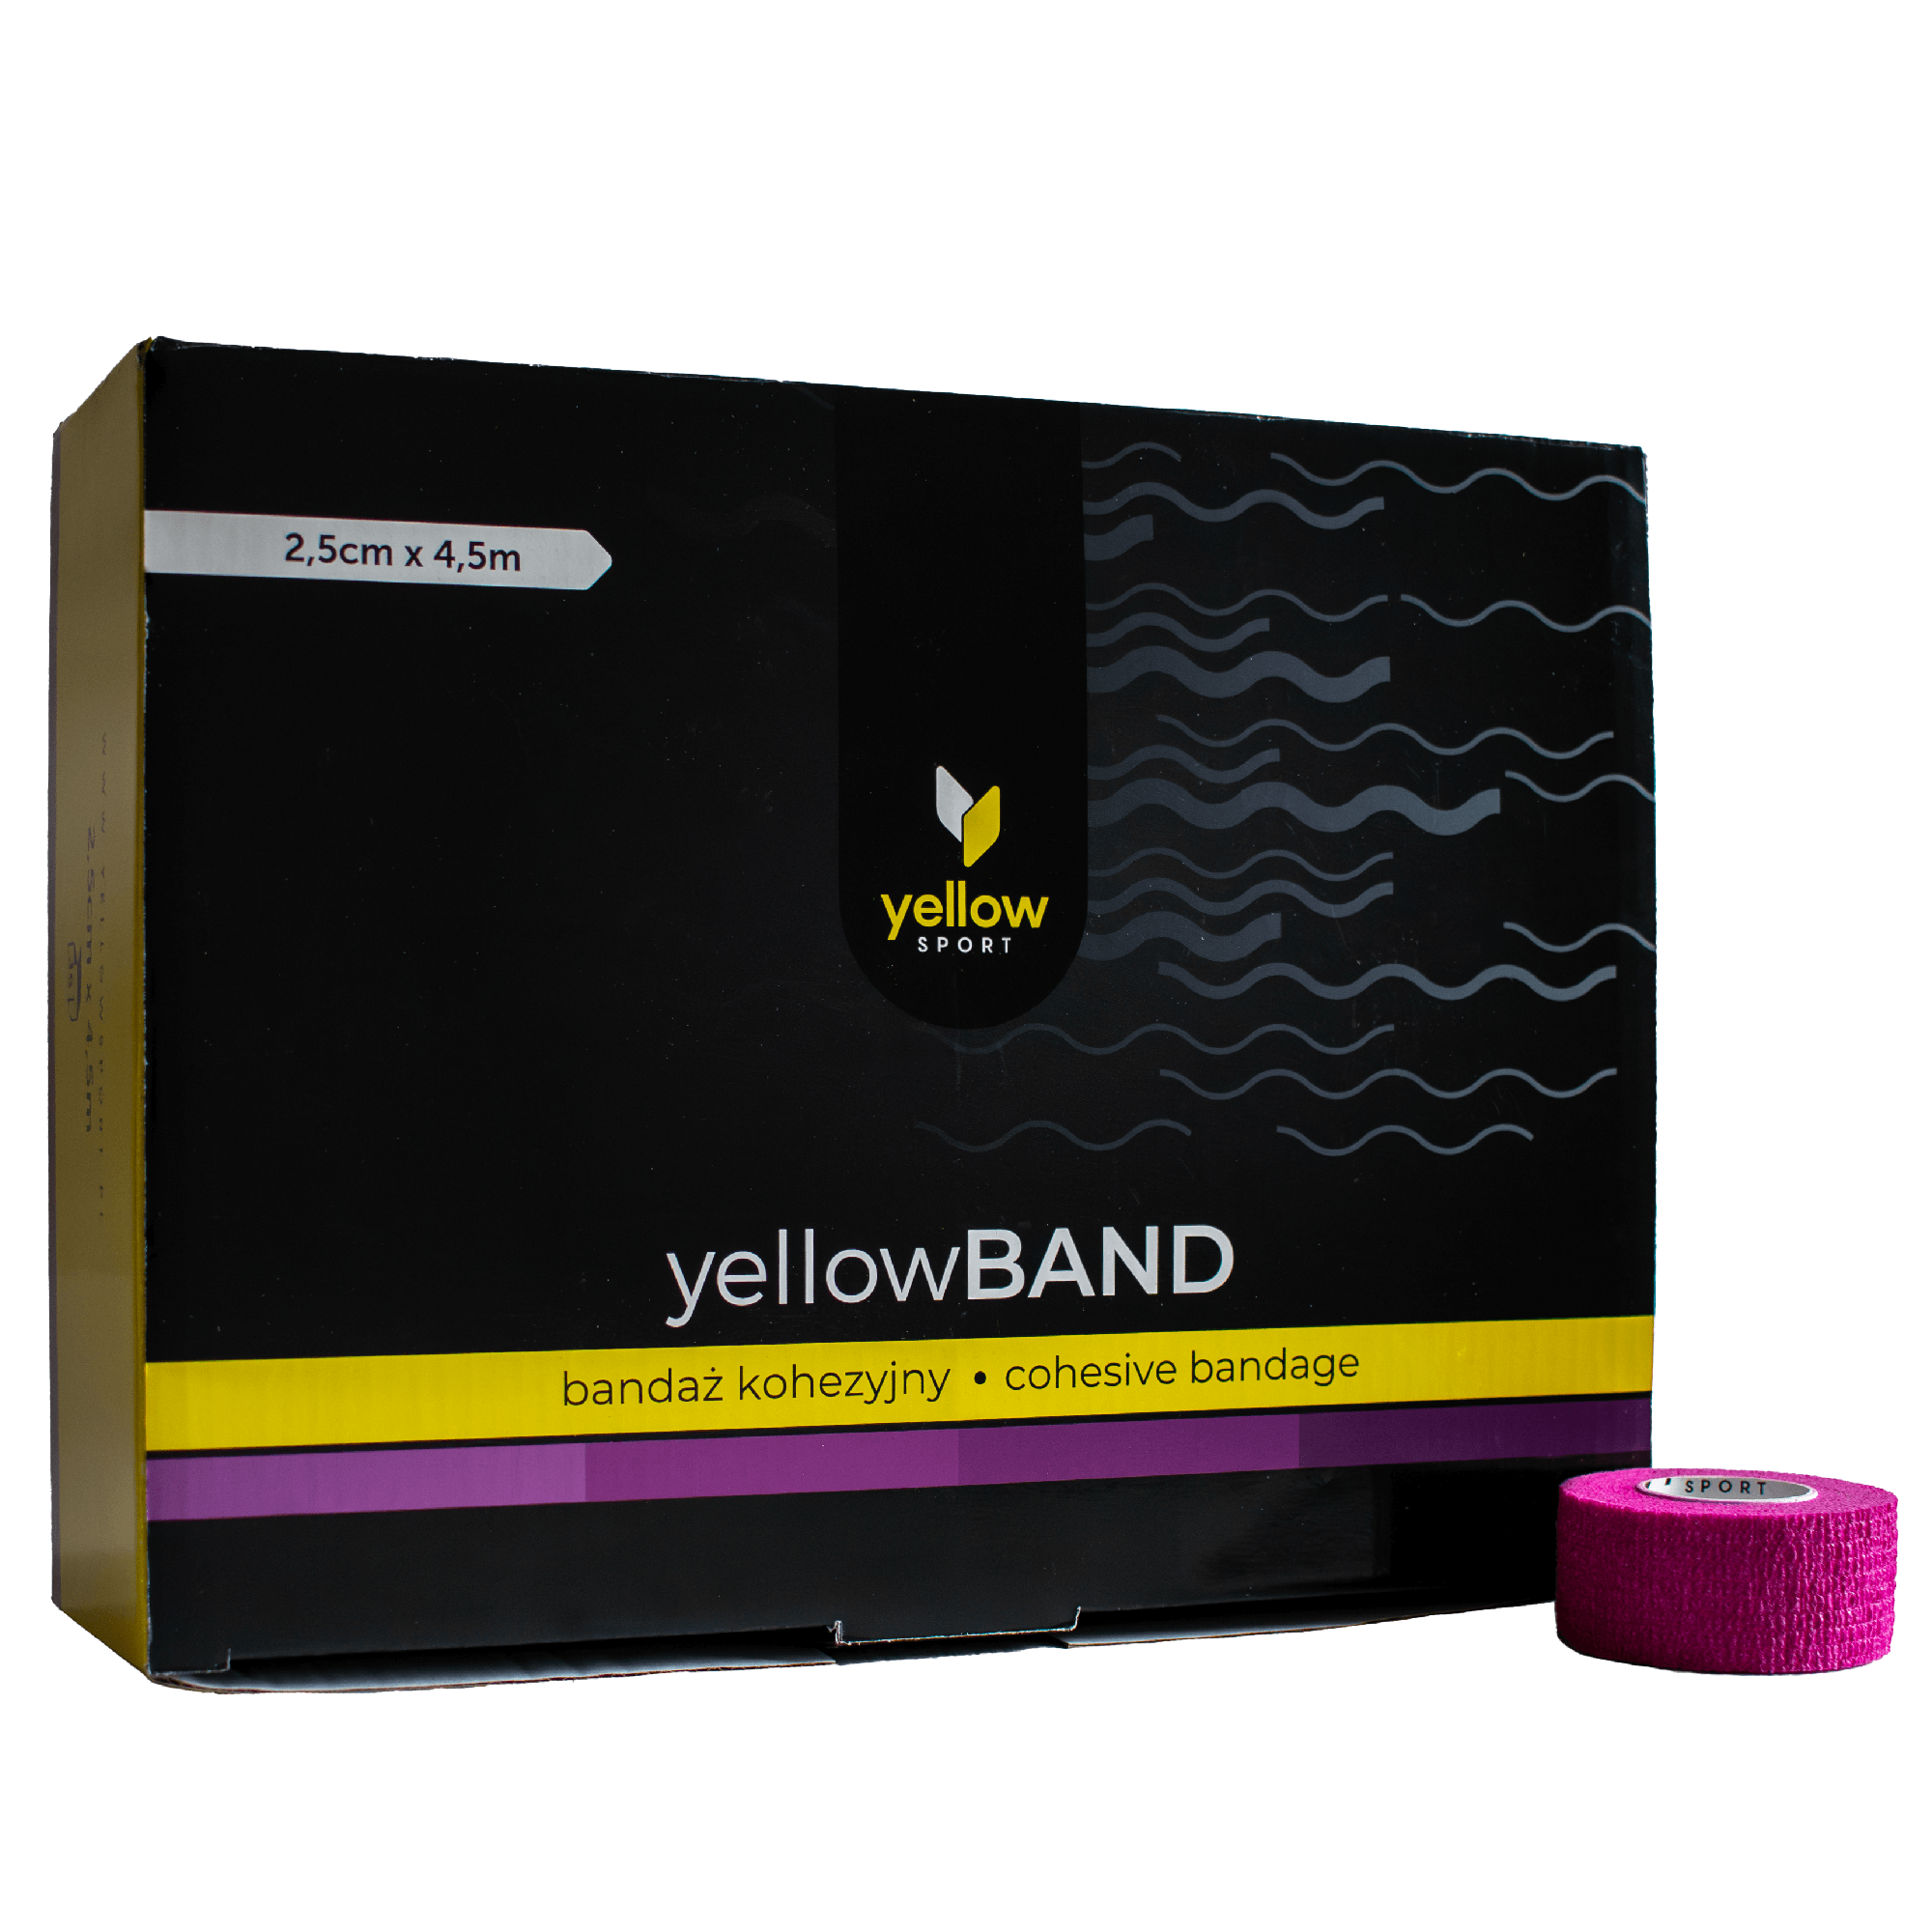 Bandaż kohezyjny yellowBAND - 2,5cm x 4,5m, fioletowy zestaw 12 szt.